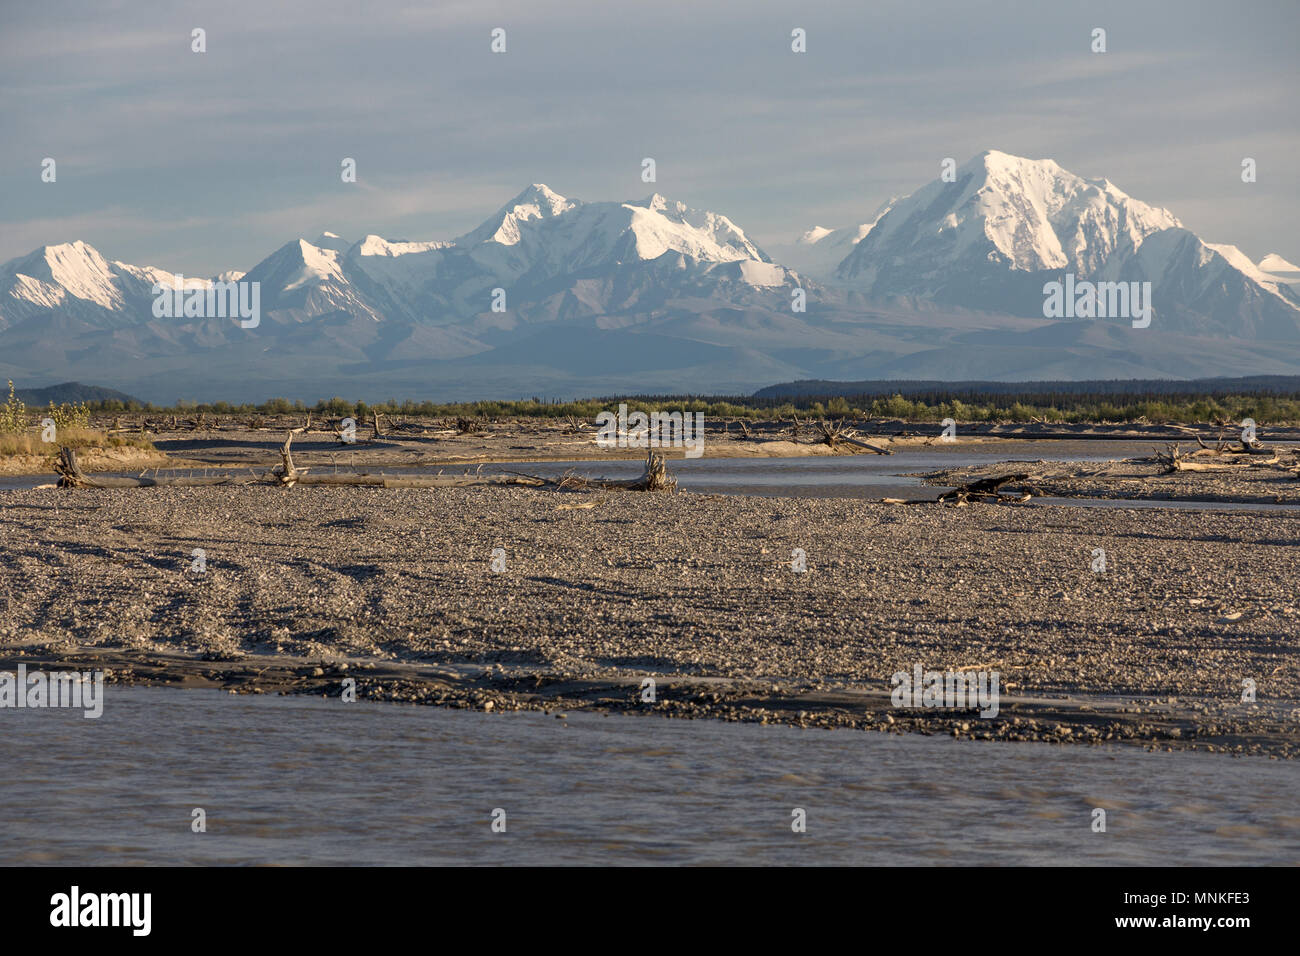 Vue sur la plaine de la rivière Tanana large de l'Alaska à mighty de montagnes. Même à la mi-juin, ces montagnes du nord ont encore beaucoup de neige et de glace Banque D'Images